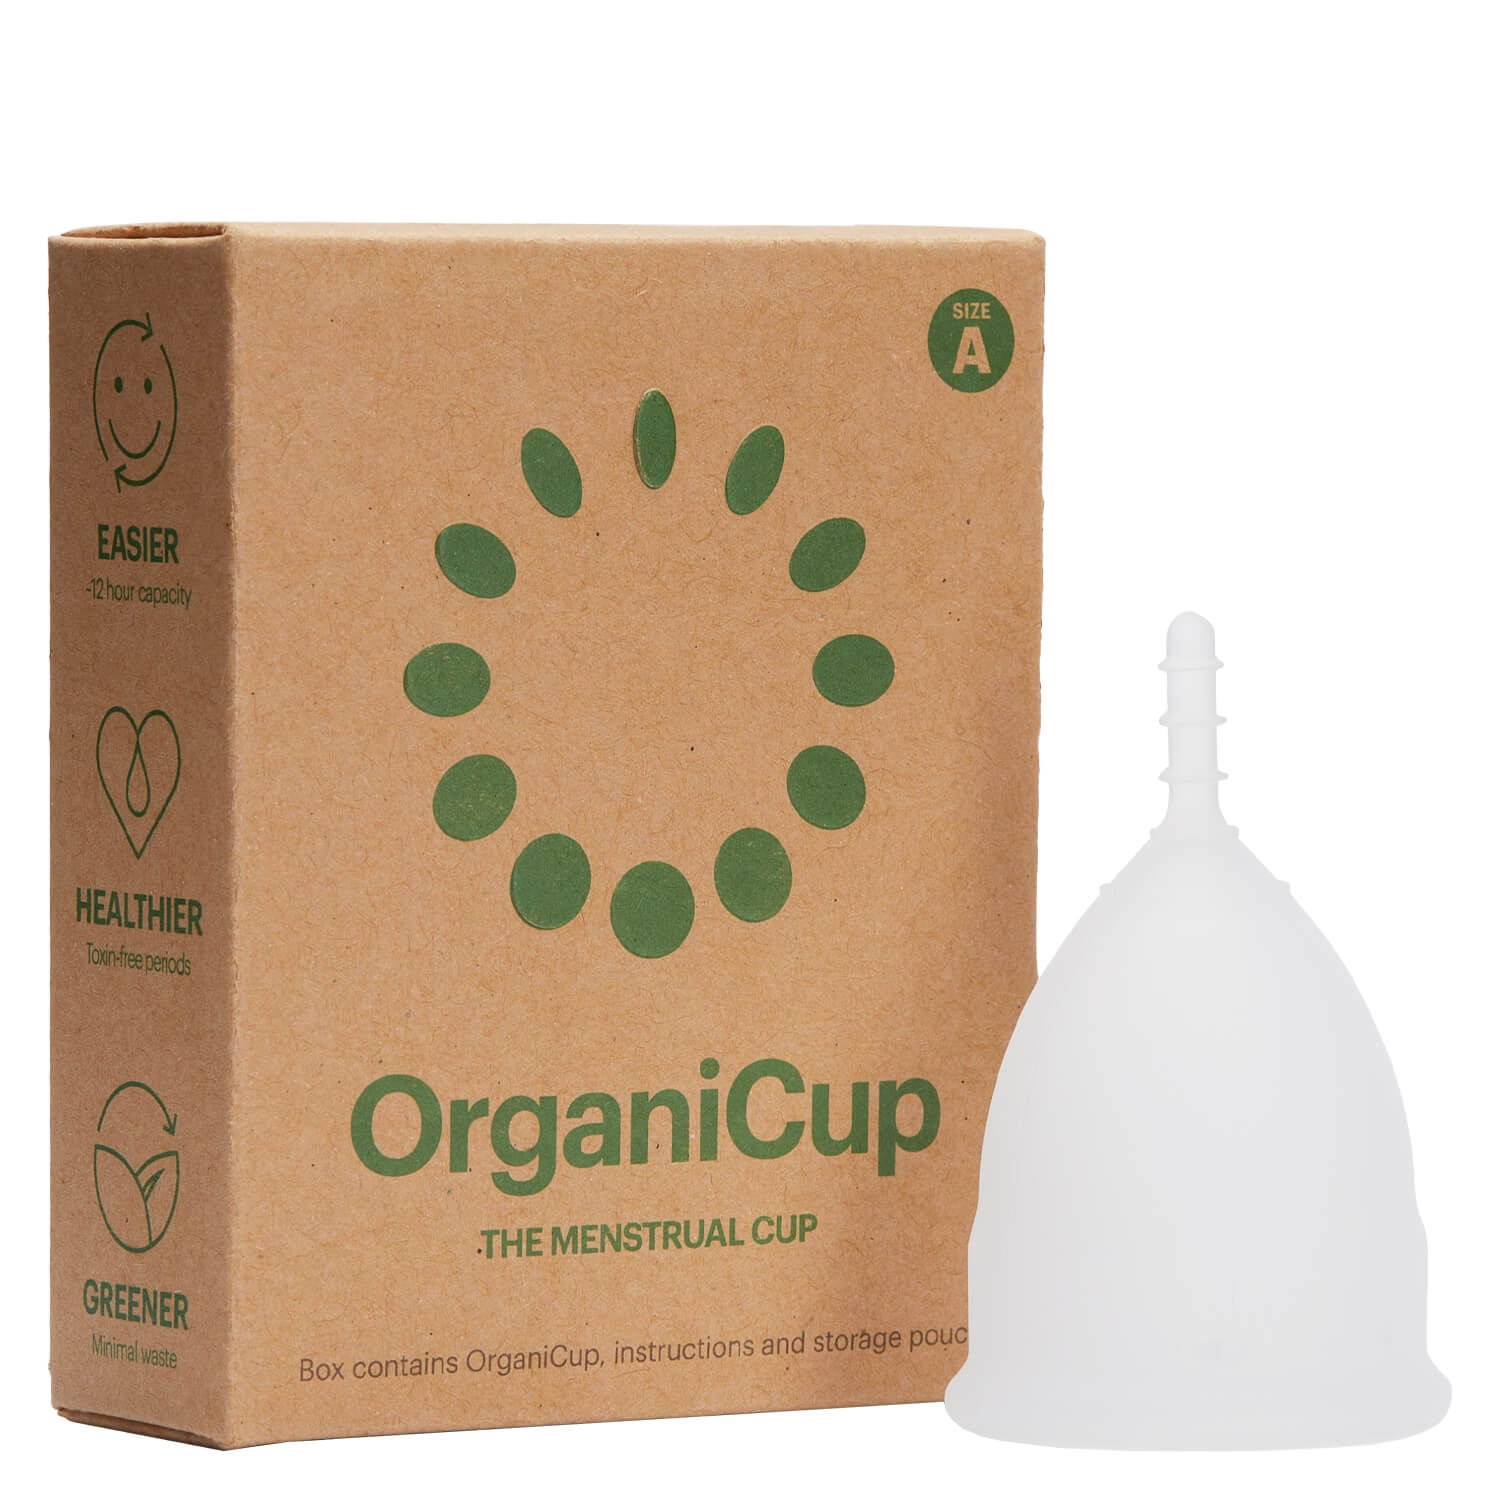 Produktbild von OrganiCup Menstrual Cup Size A